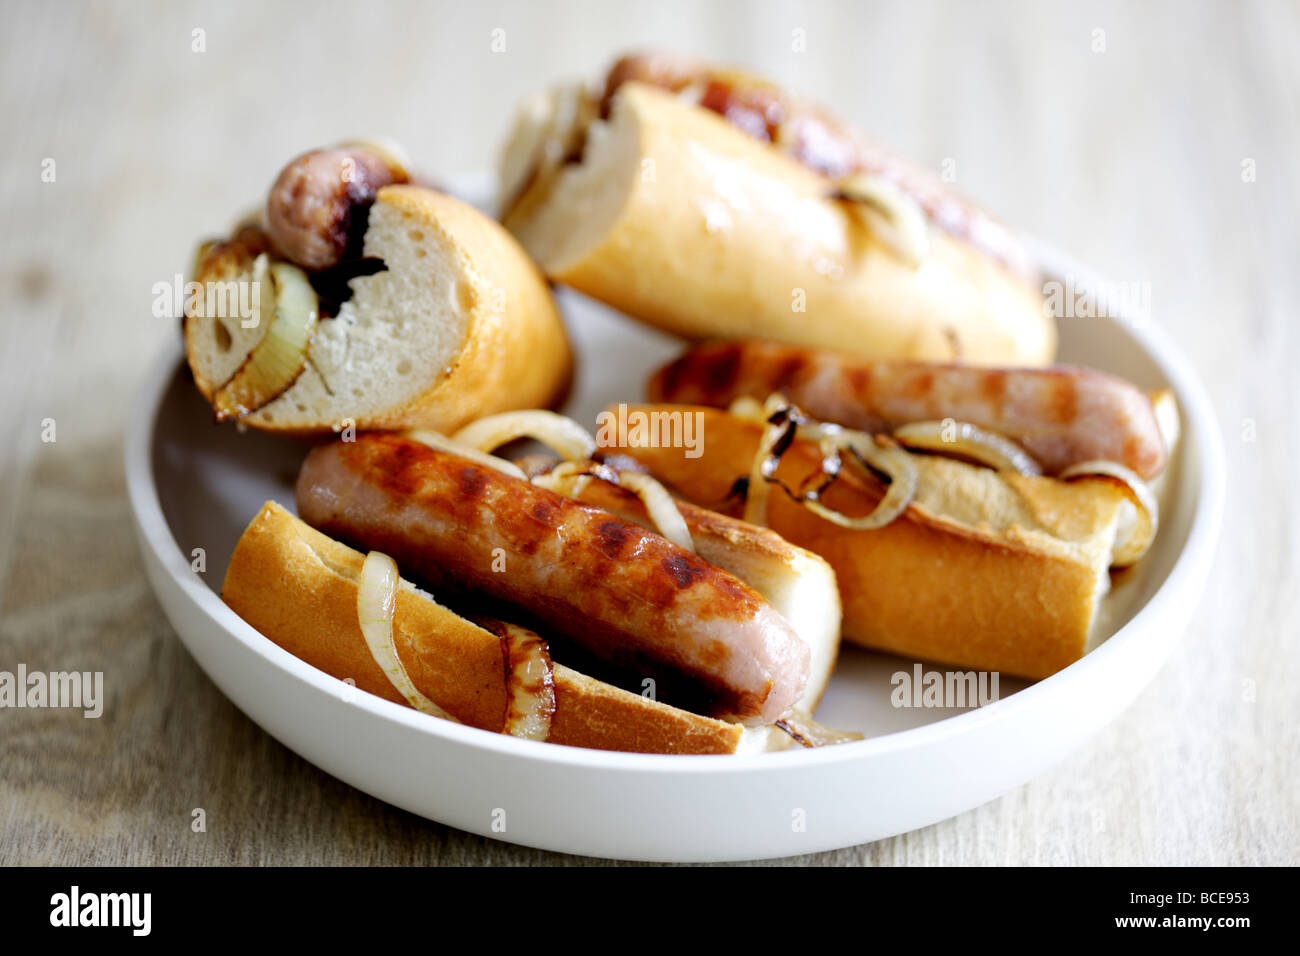 Appena cucinata Salsiccia di maiale Hot Dogs con le cipolle in un pane bianco rotolo croccante servita in un piatto con il n. di persone Foto Stock